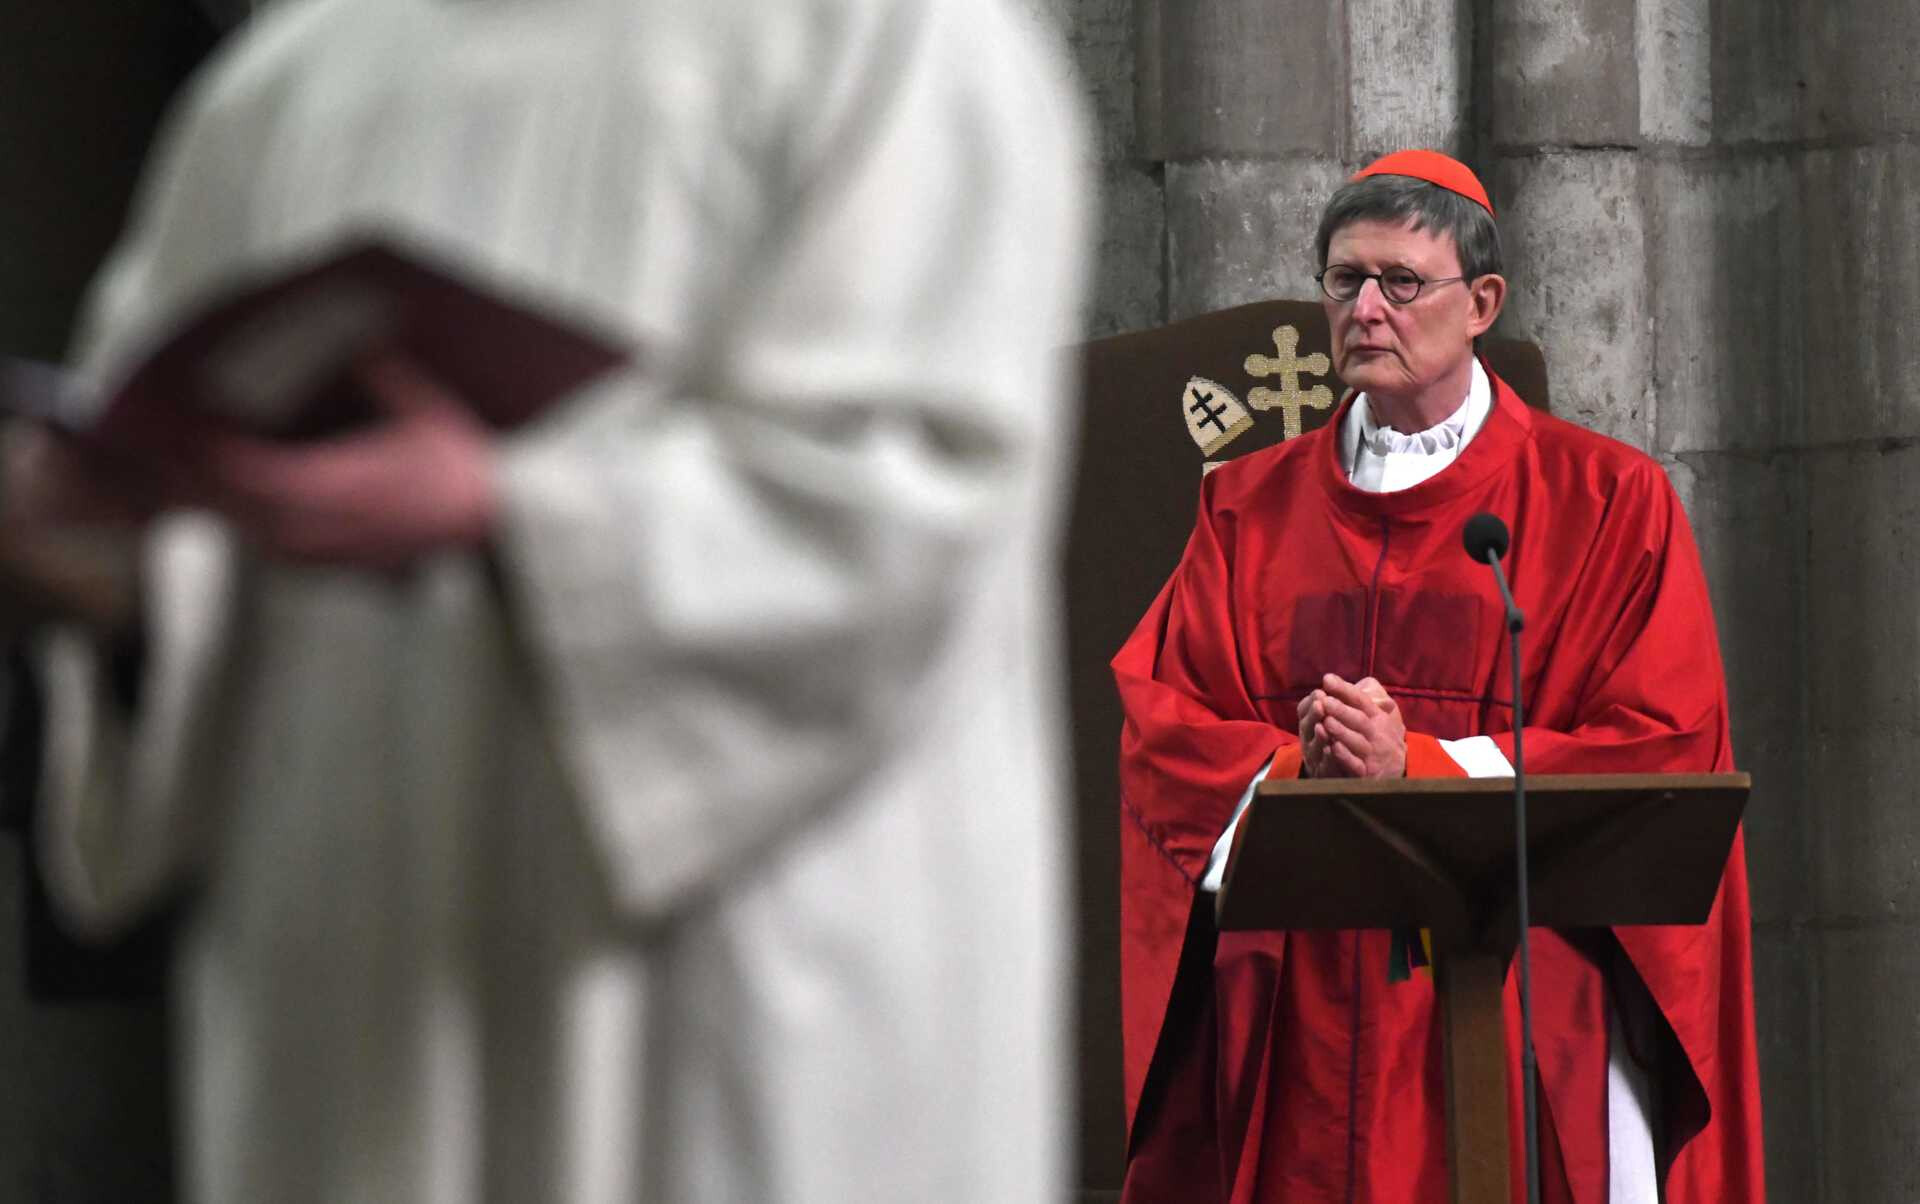 Katholische Priester segnen gleichgeschlechtliche Paare gegen deutschen Erzbischof